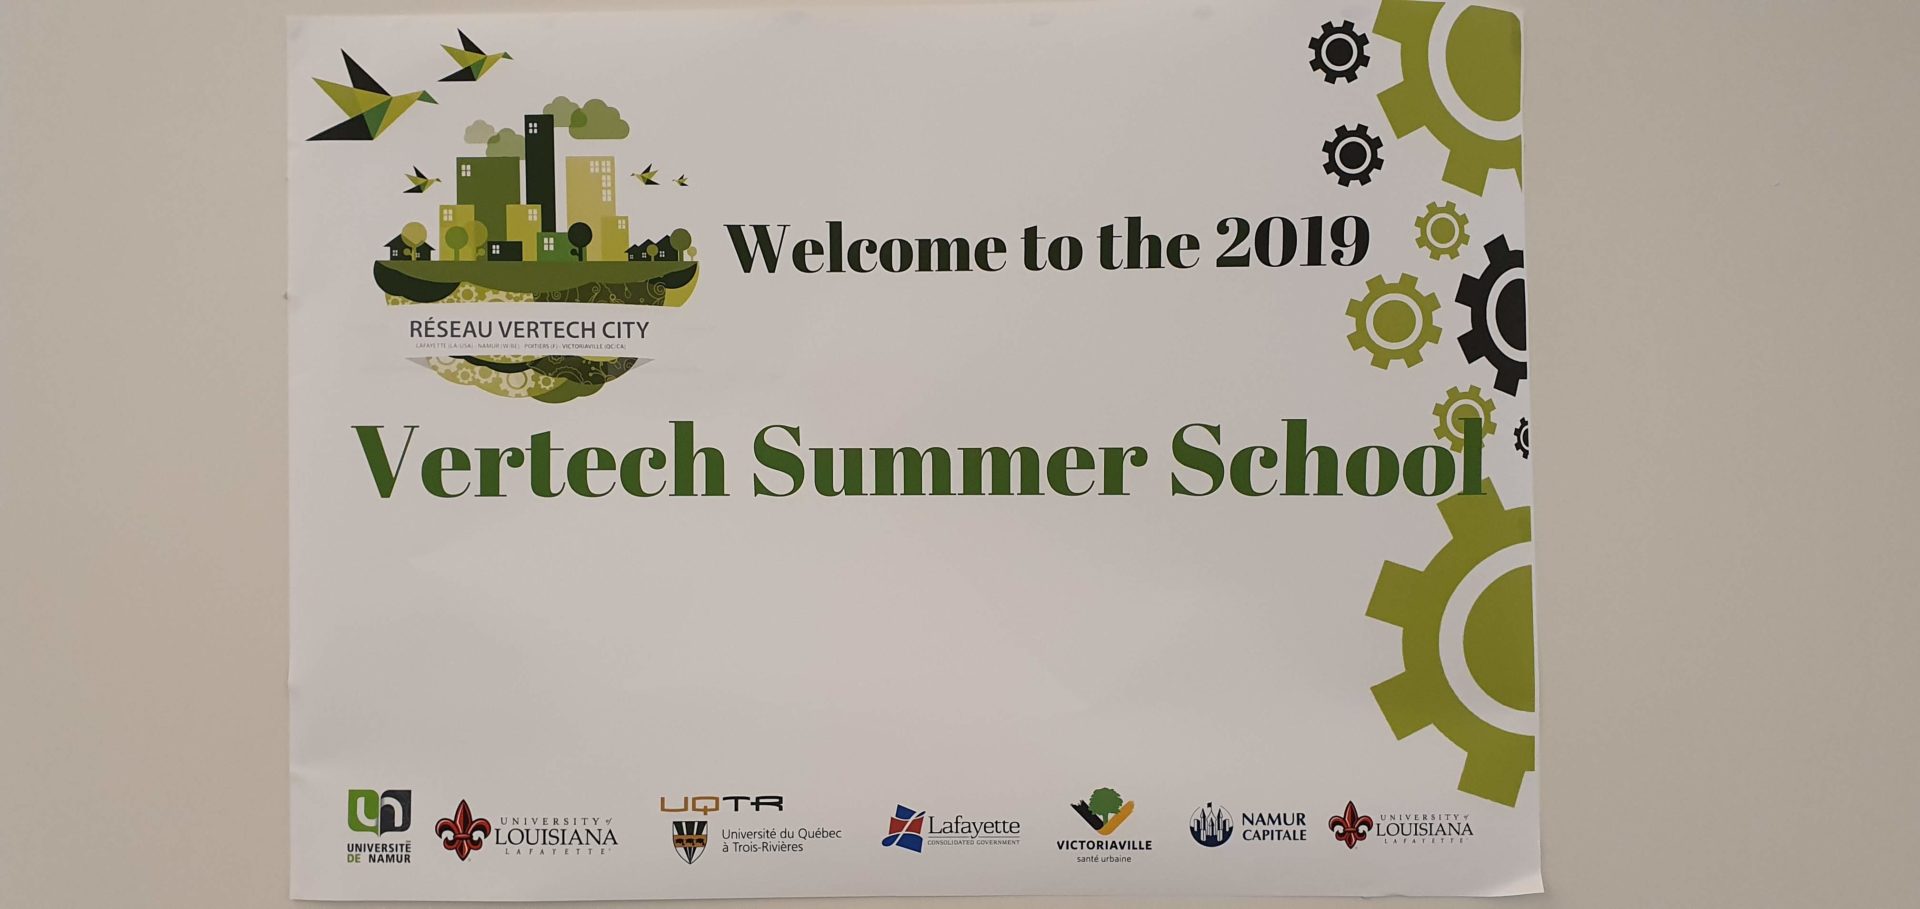 Ecole internationale d'été Vertech à Namur du 13 au 21 juillet 2019.